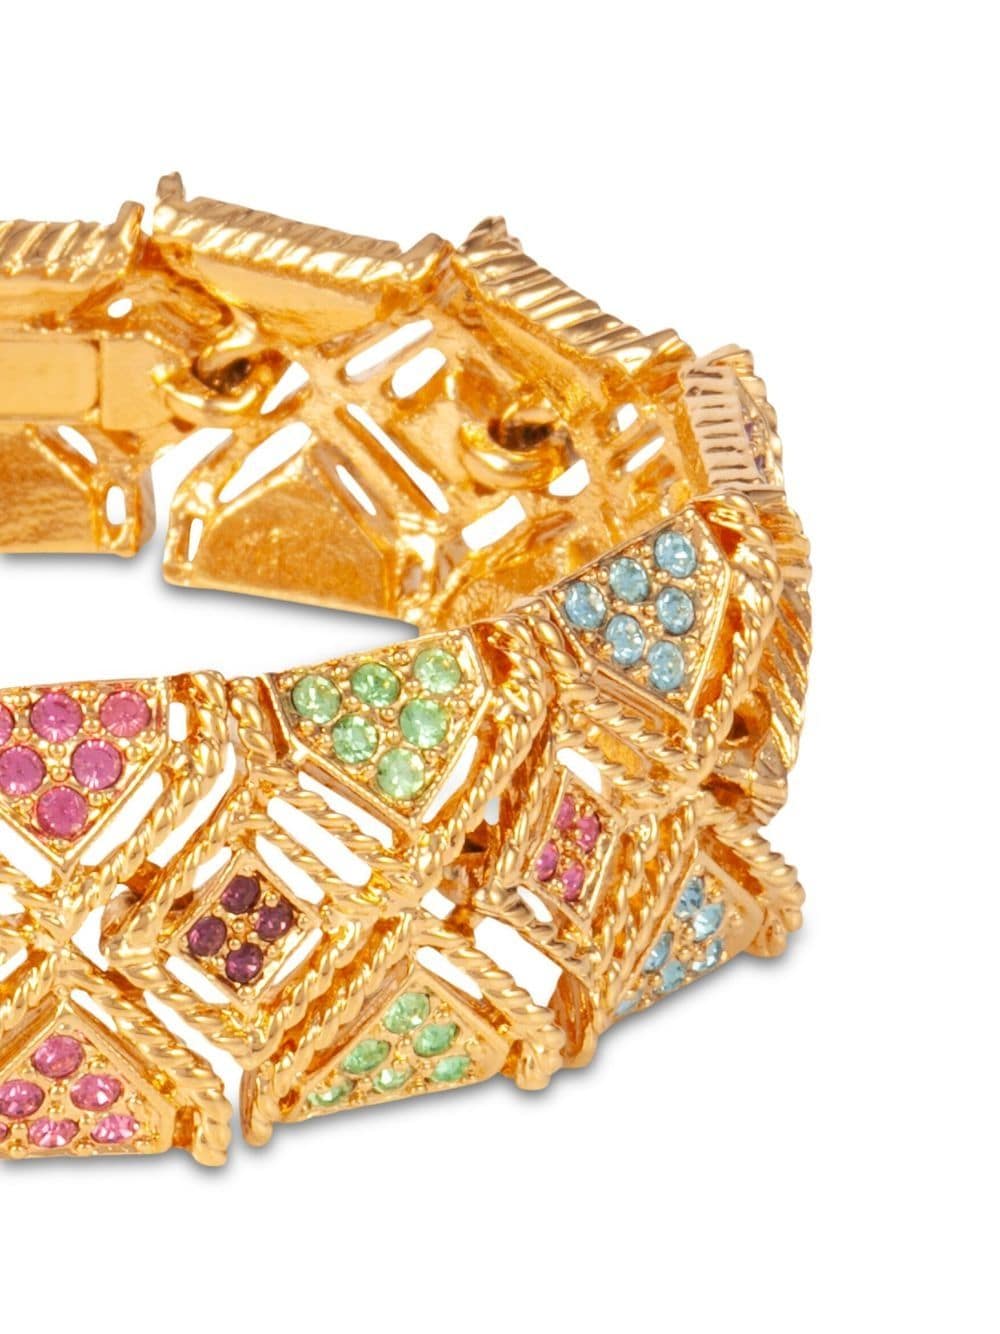 Pre-owned Susan Caplan Vintage 1980s Embellished Cuff Bracelet In Gold